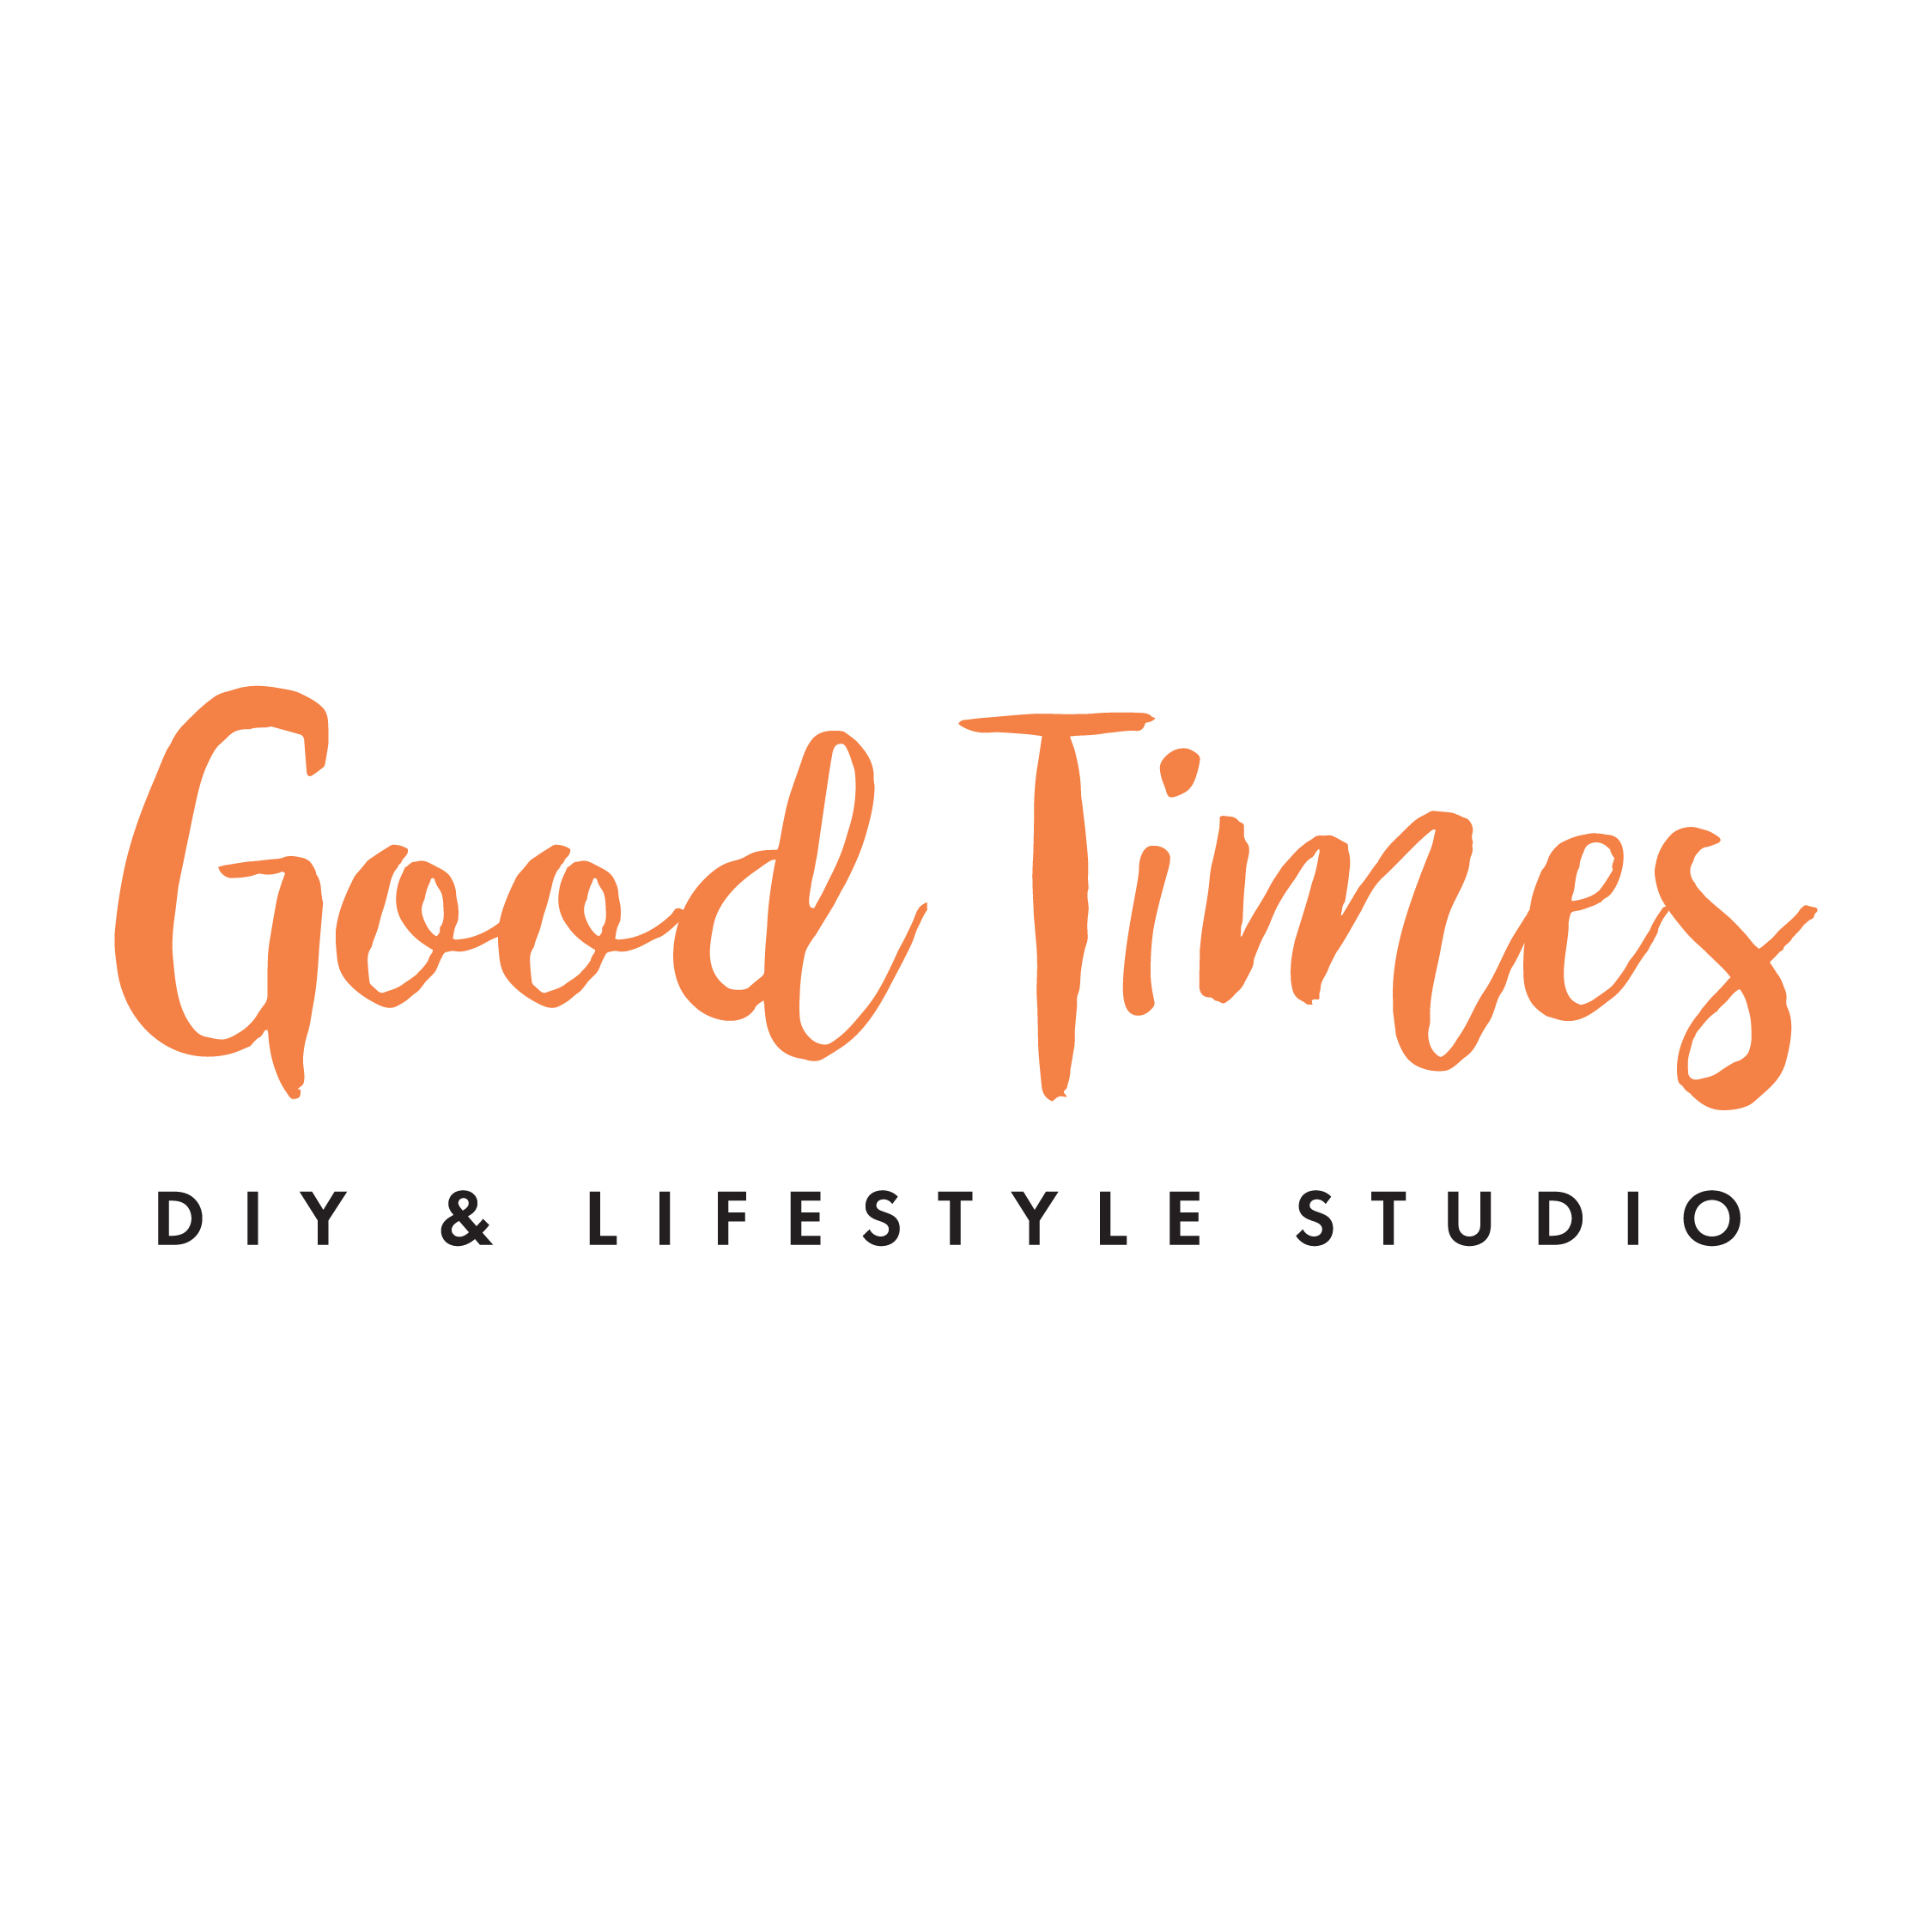 Good Times DIY Pottery Studio & Good Times DIY Tufting Studio